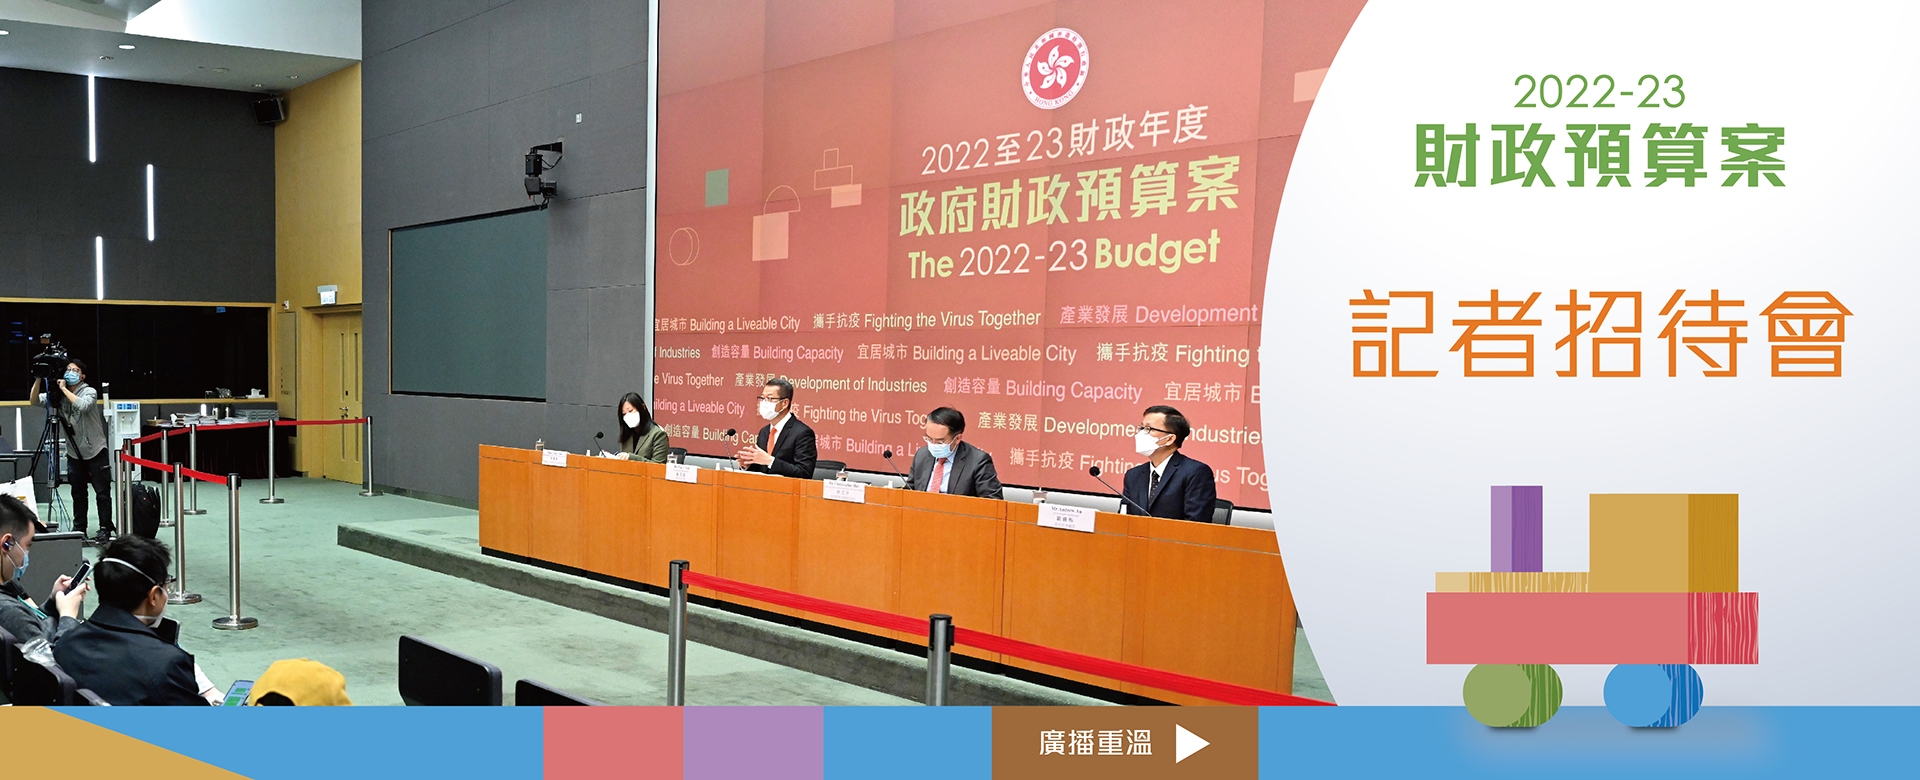 2022-23財政預算案記者會廣播重溫